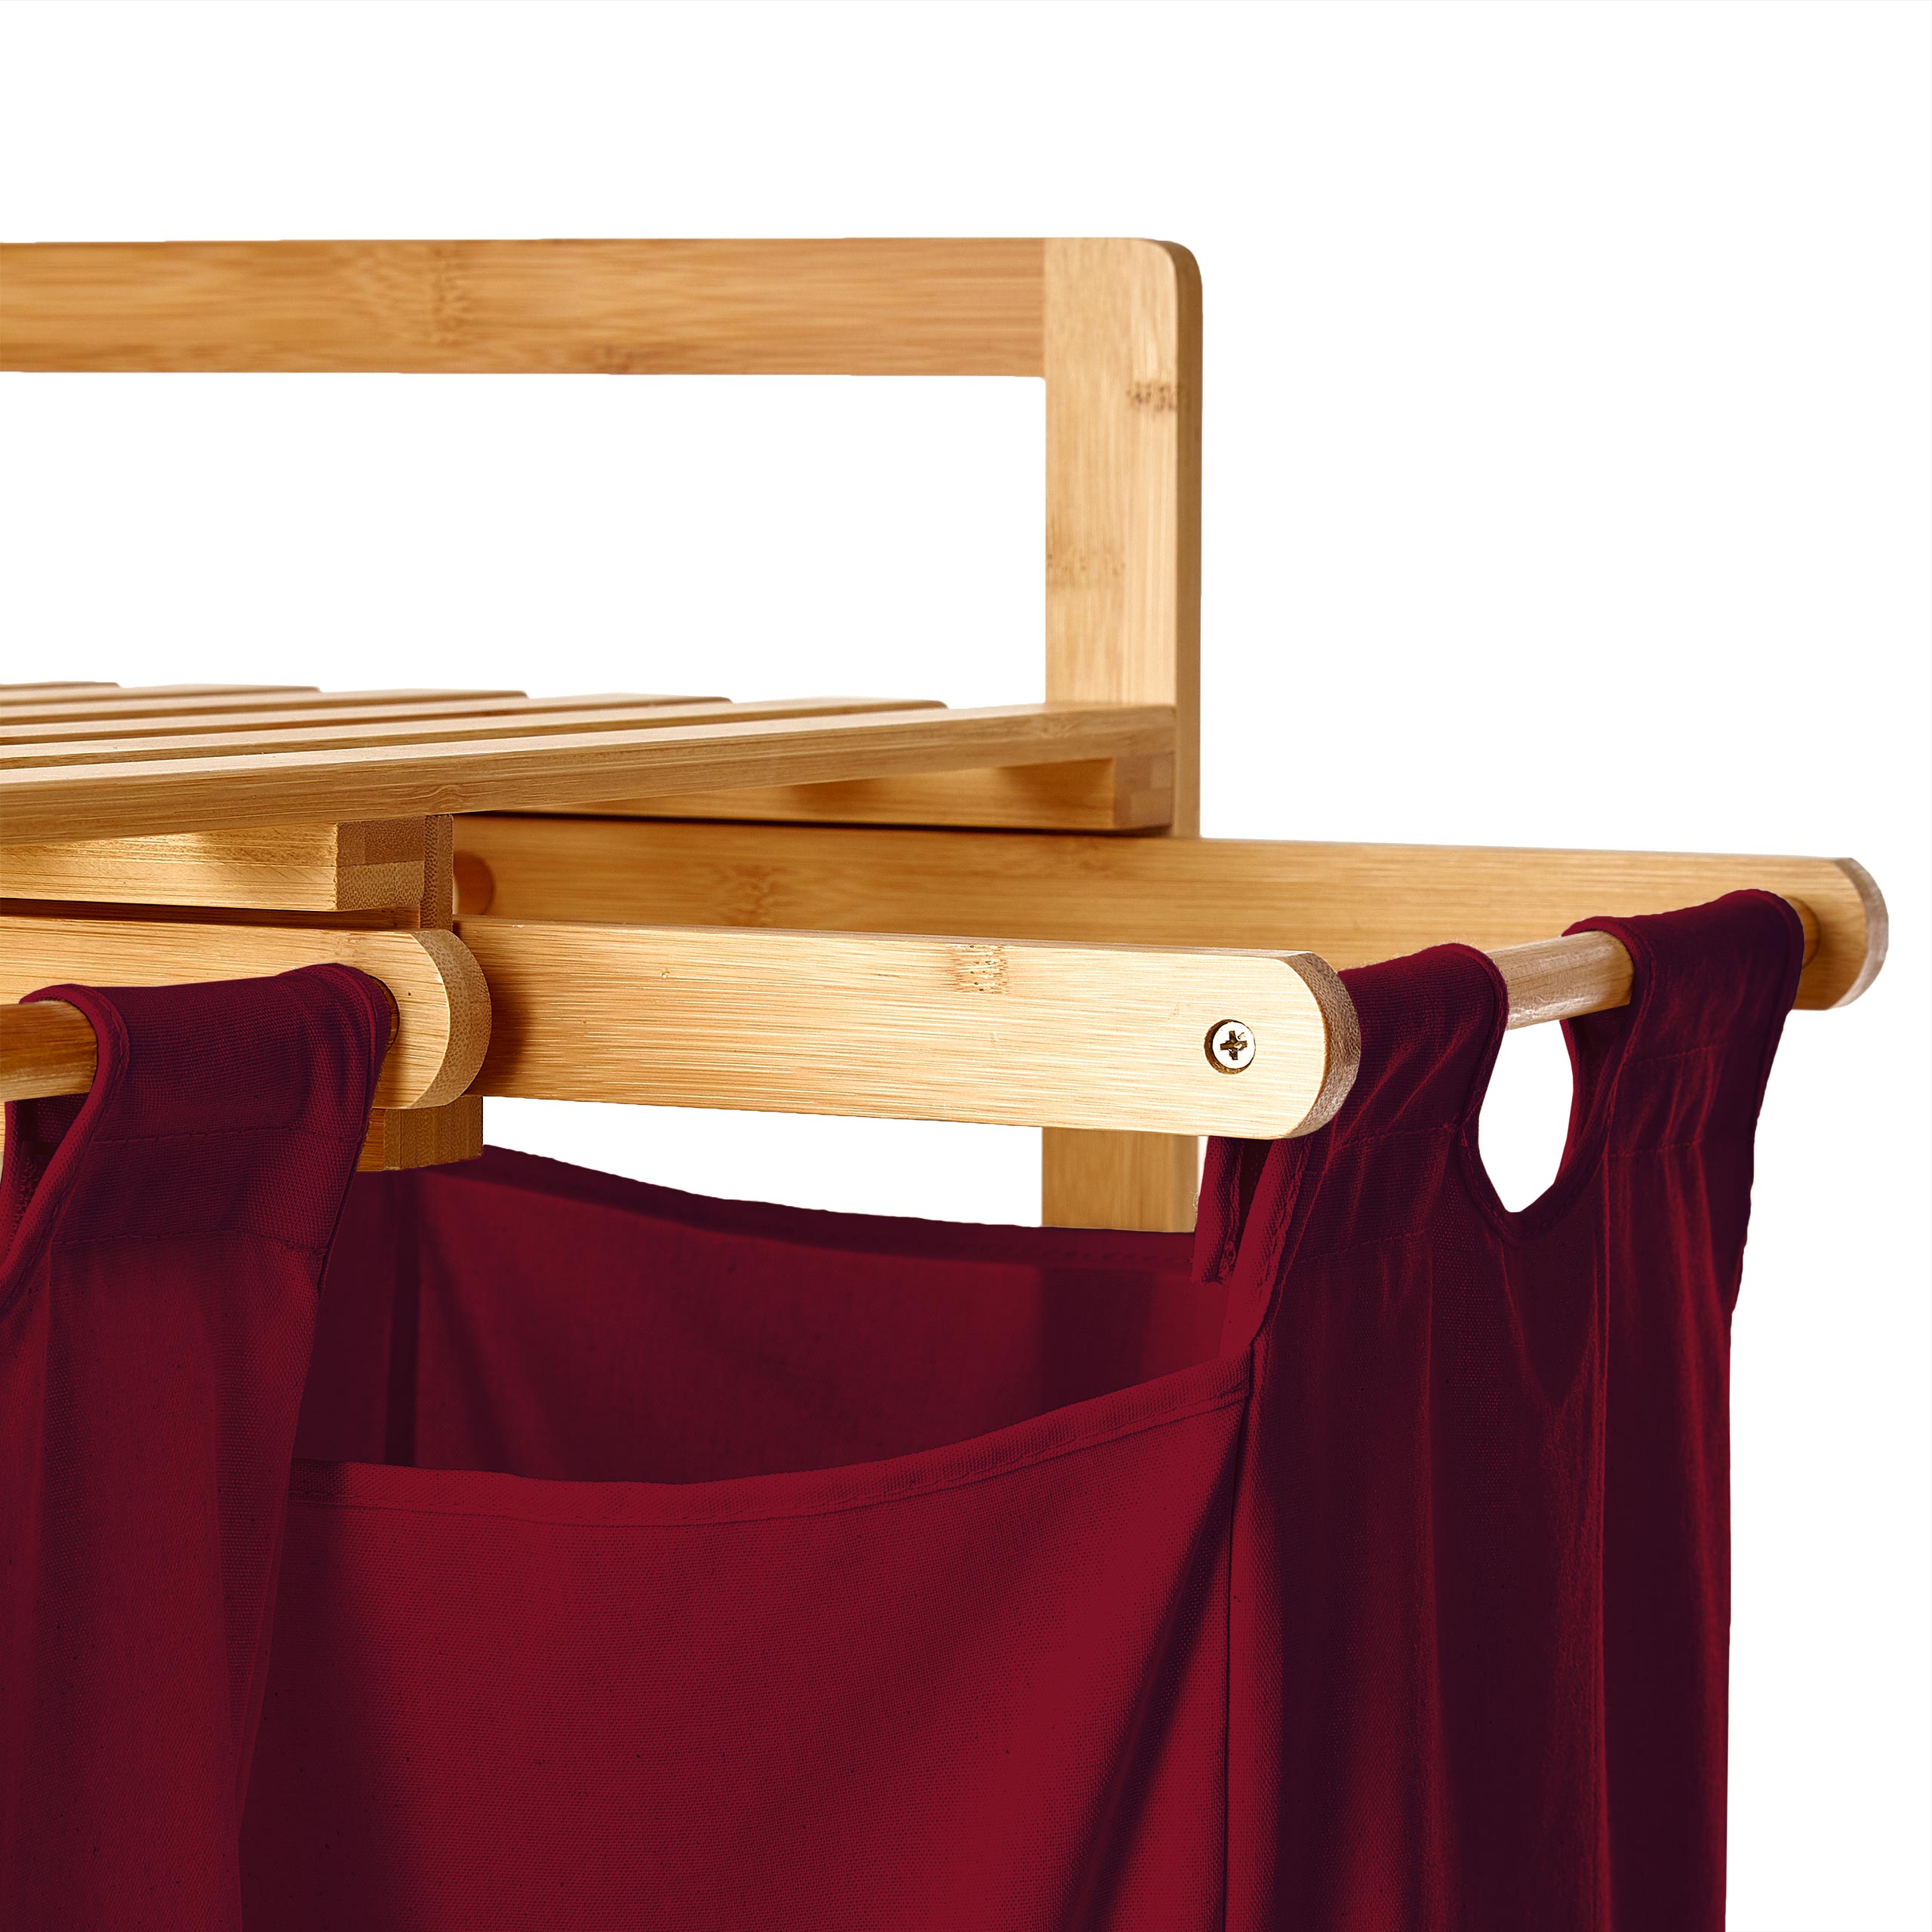 Bambus Wäschekorb mit 2 ausziehbaren Wäschesacken - 73 x 64 x 33 cm - Dunkelrot